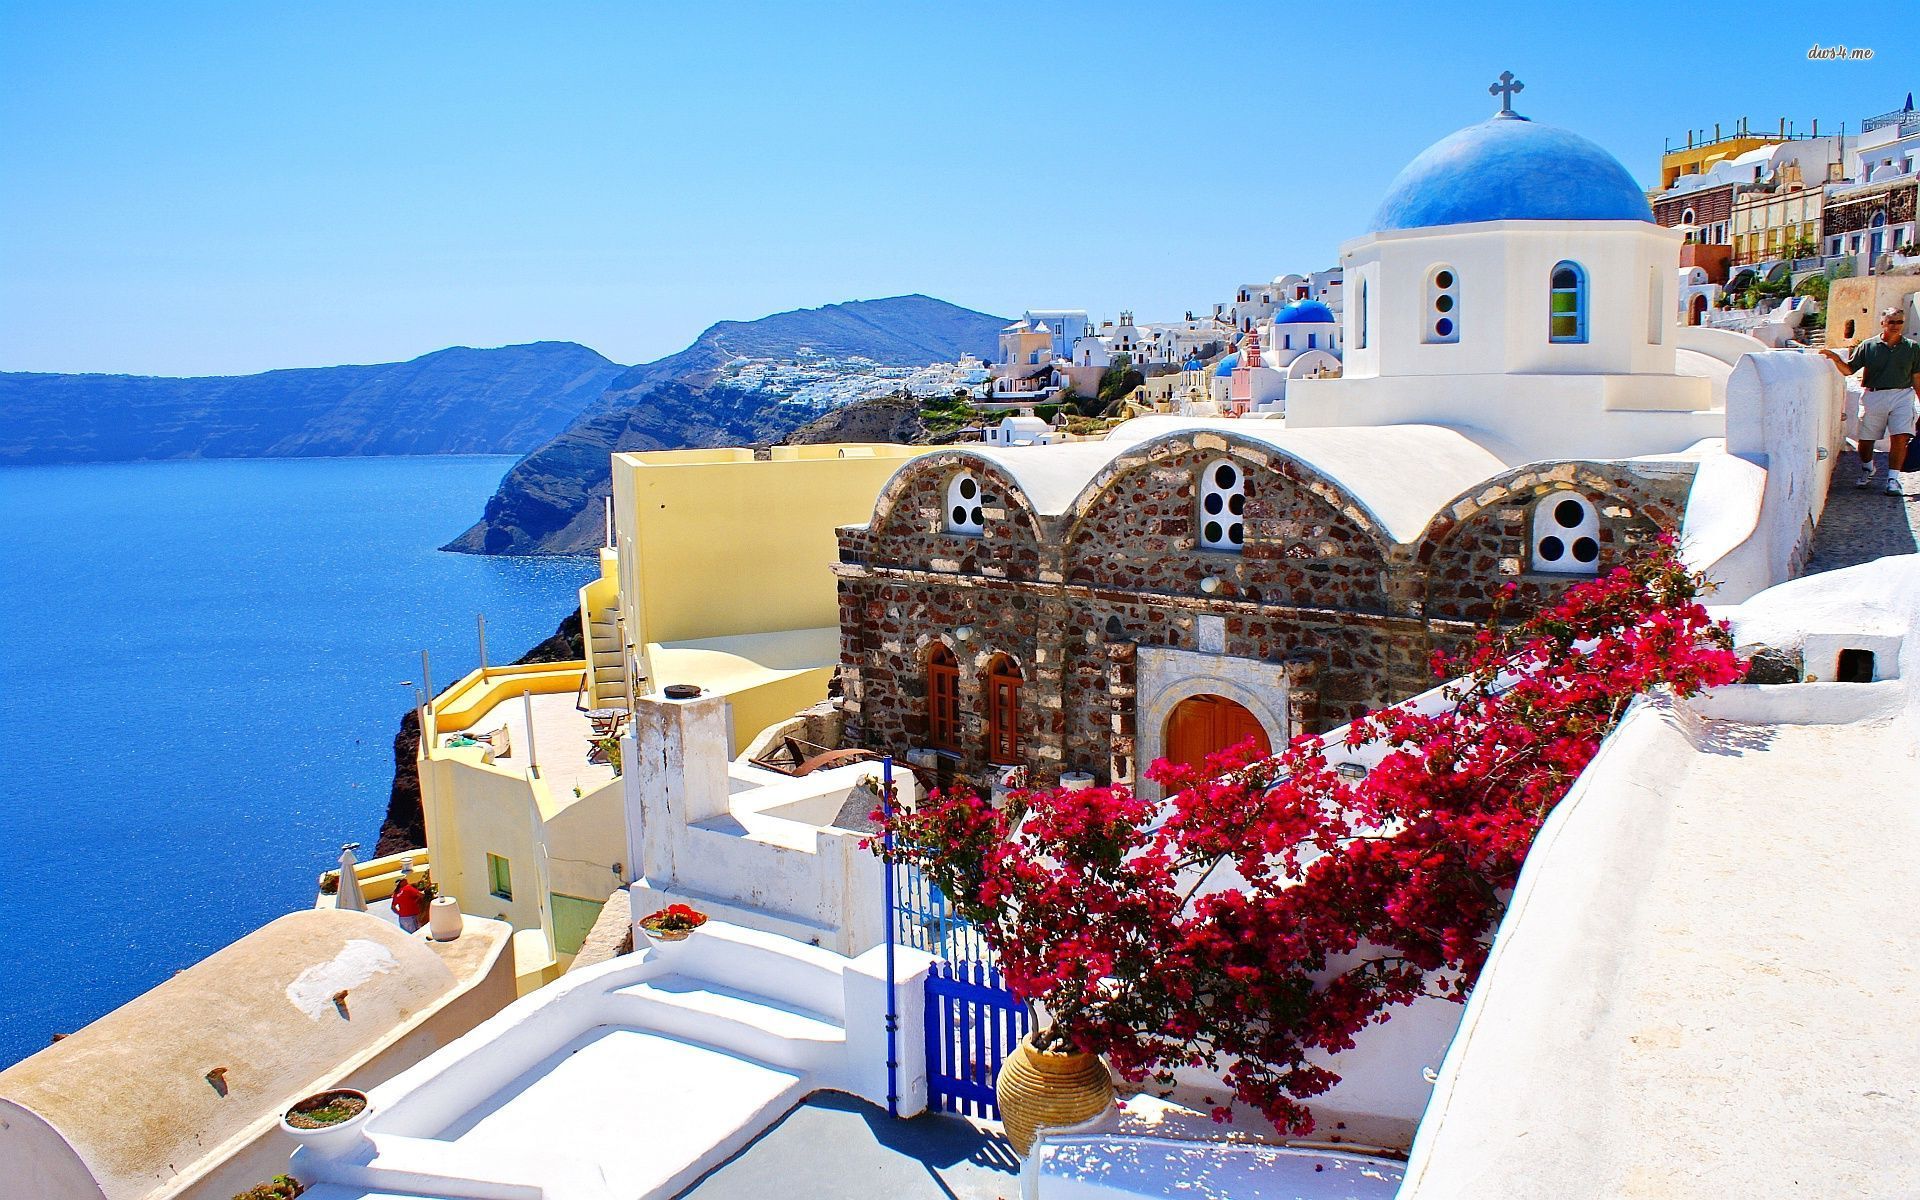 Hình nền desktop Hy Lạp miễn phí: Tải ngay hình nền desktop Hy Lạp miễn phí để thưởng thức những khung cảnh đẹp như tranh với những địa điểm nổi tiếng, những bãi biển tuyệt đẹp và những thị trấn cổ kính.